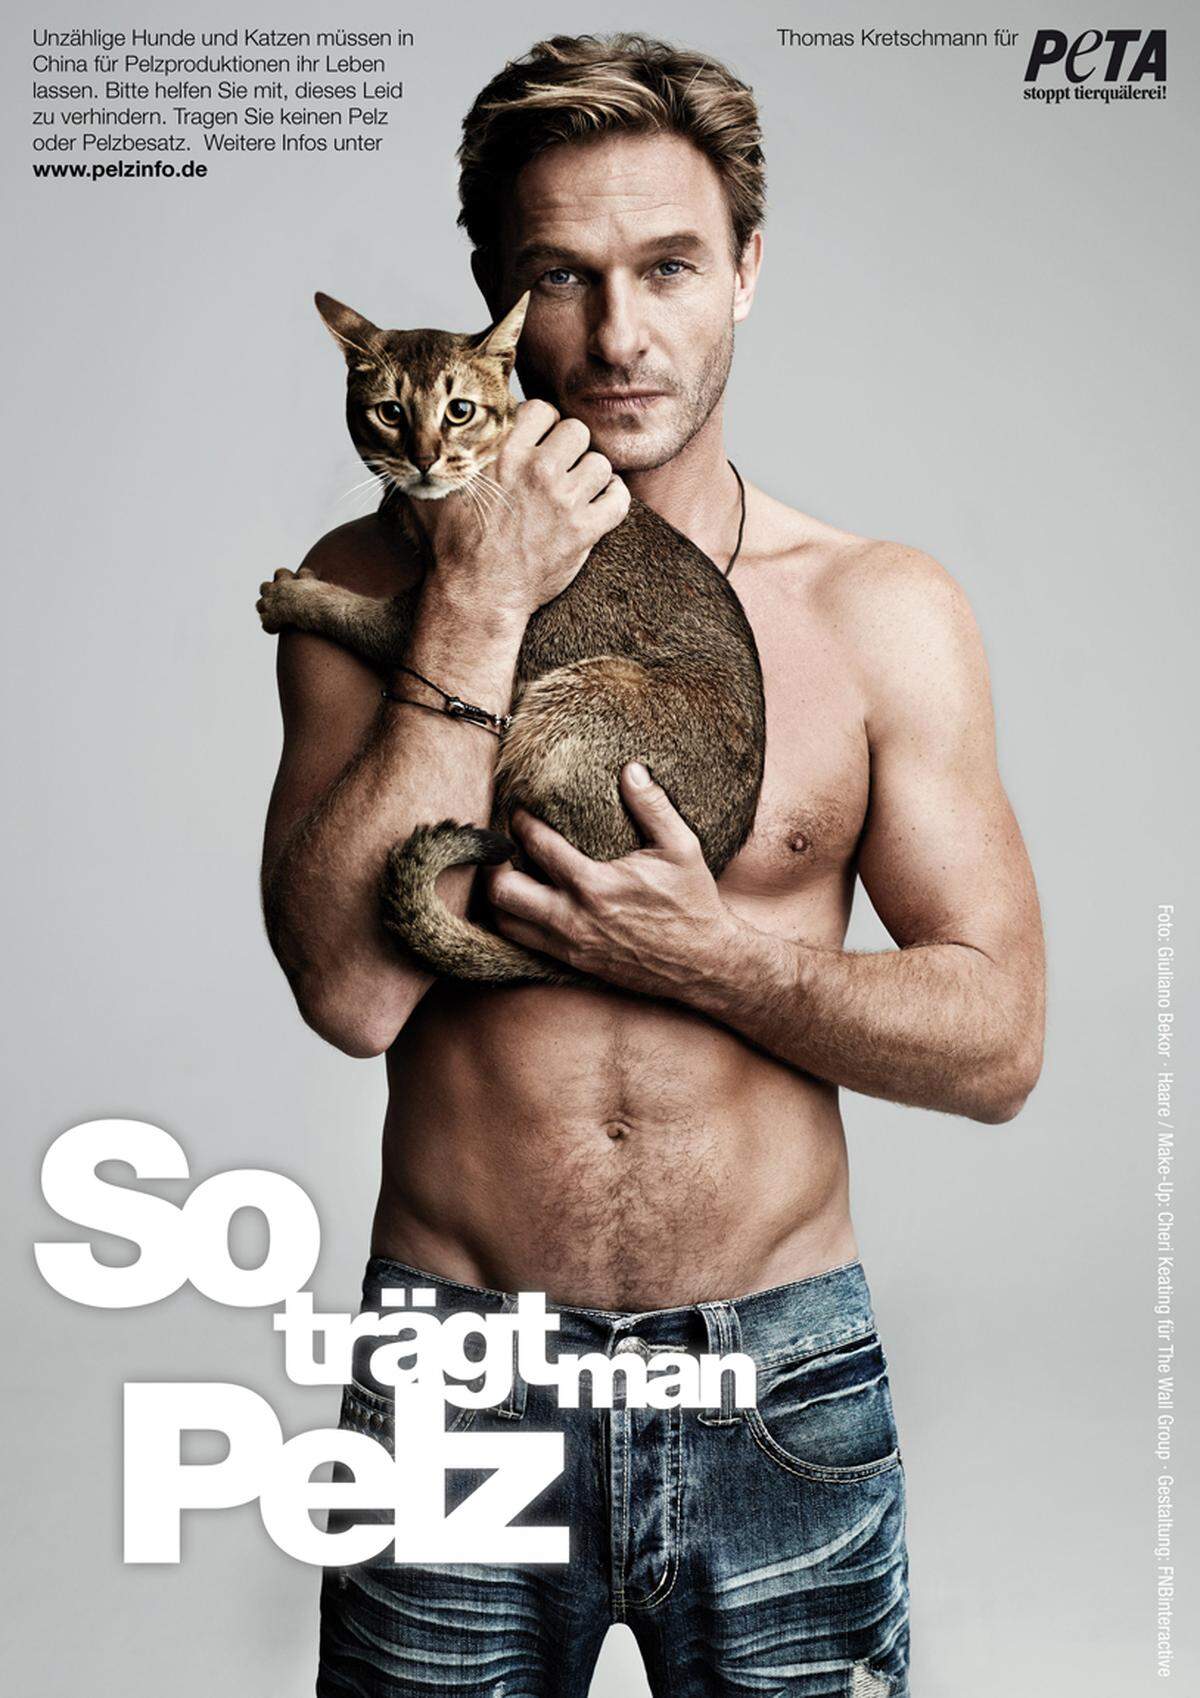 Der in Hollywood lebende Schauspieler Thomas Kretschmann engagierte sich zusammen mit seiner Katze "Tut" gegen die Pelzindustrie.